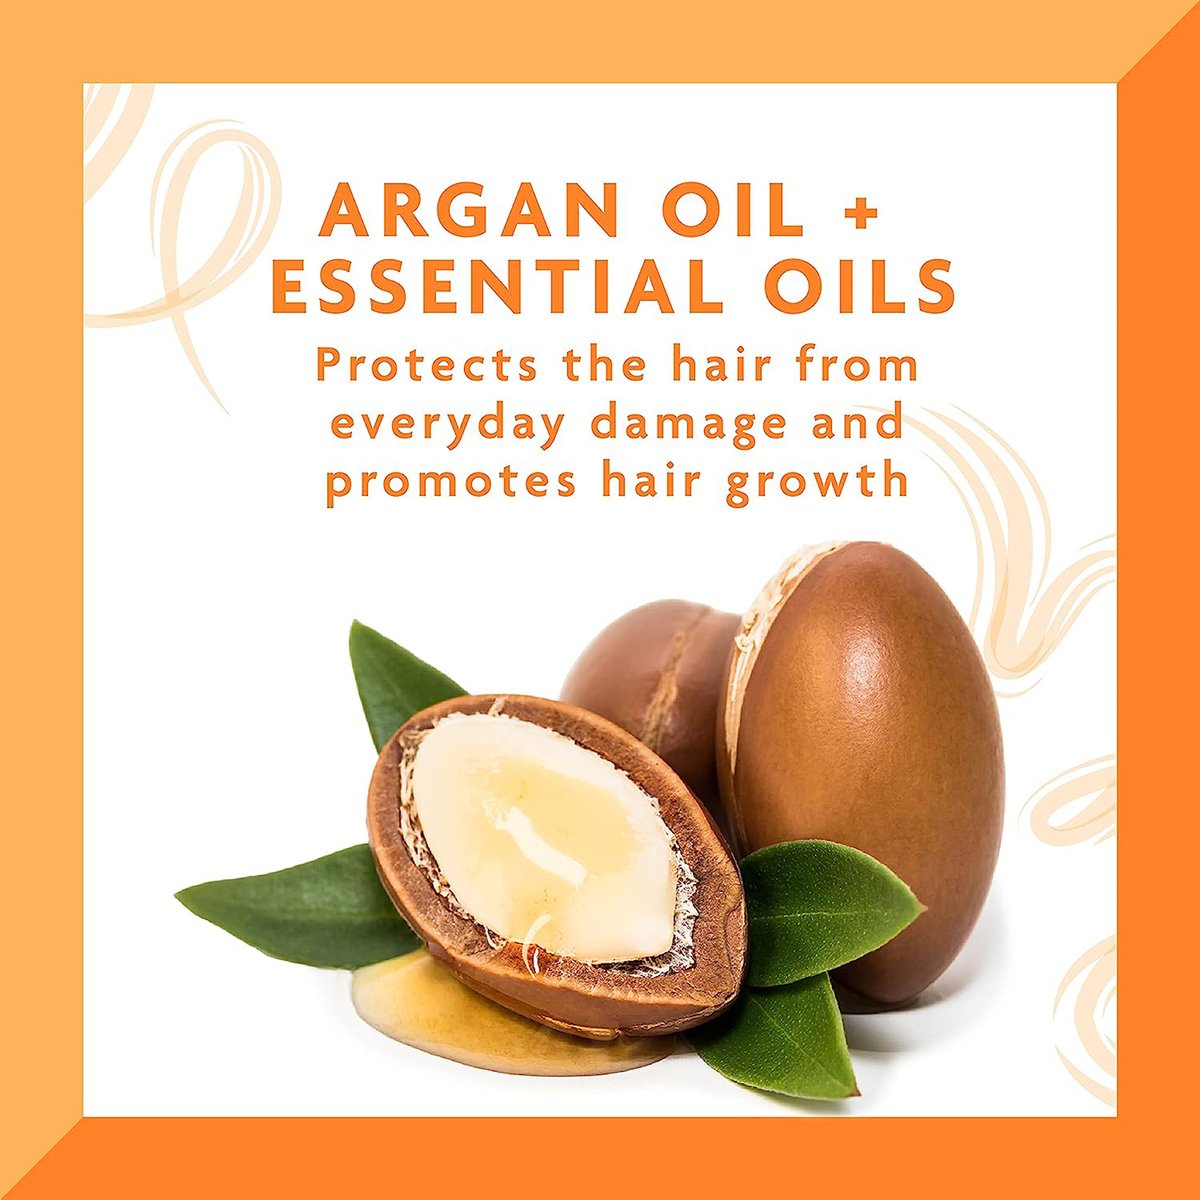 Cantu Argan Oil Leave-in Conditioning Repair Cream 453 g